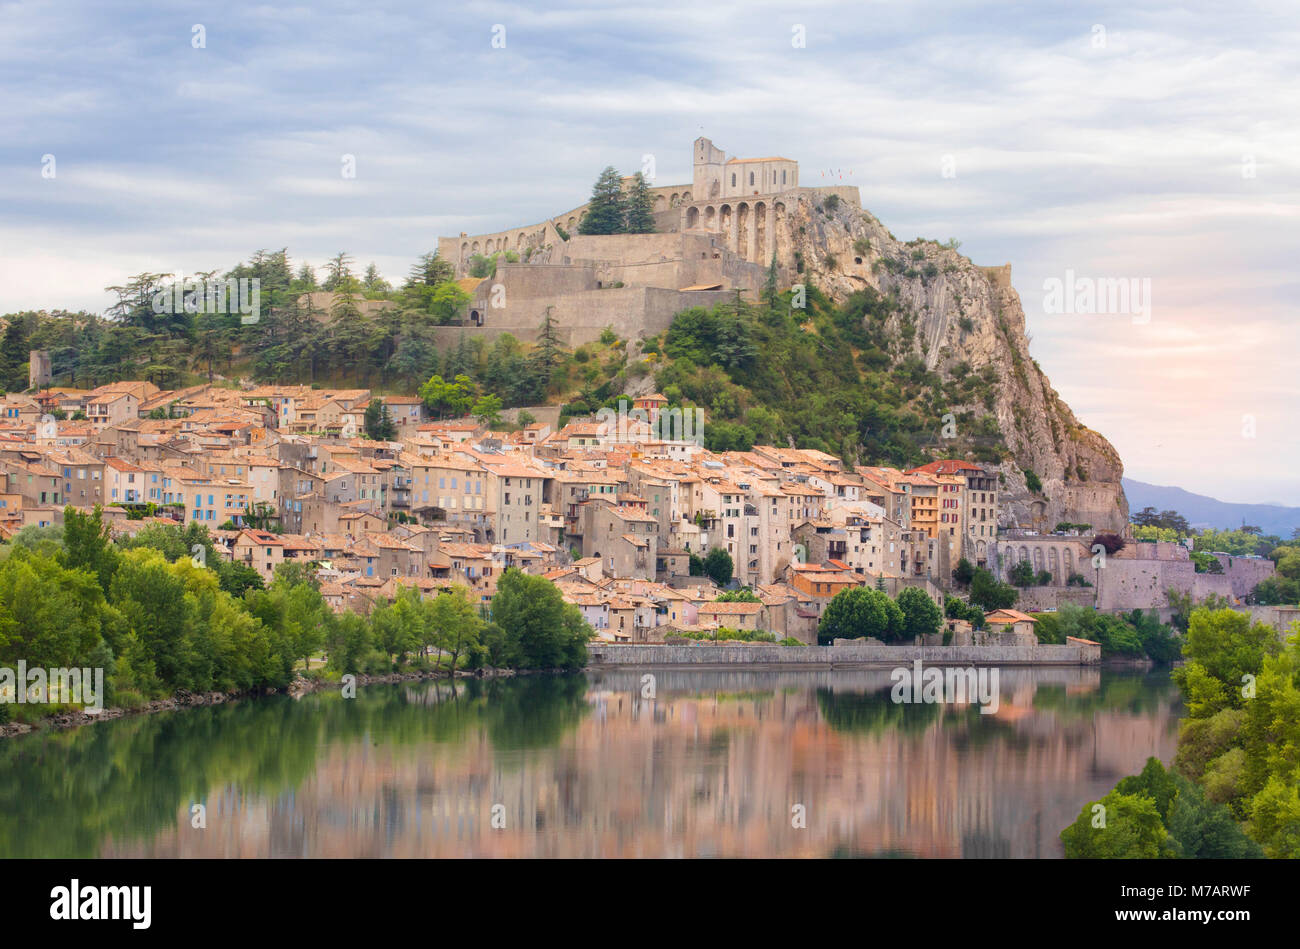 France, Provence Region, Sisteron City, Stock Photo